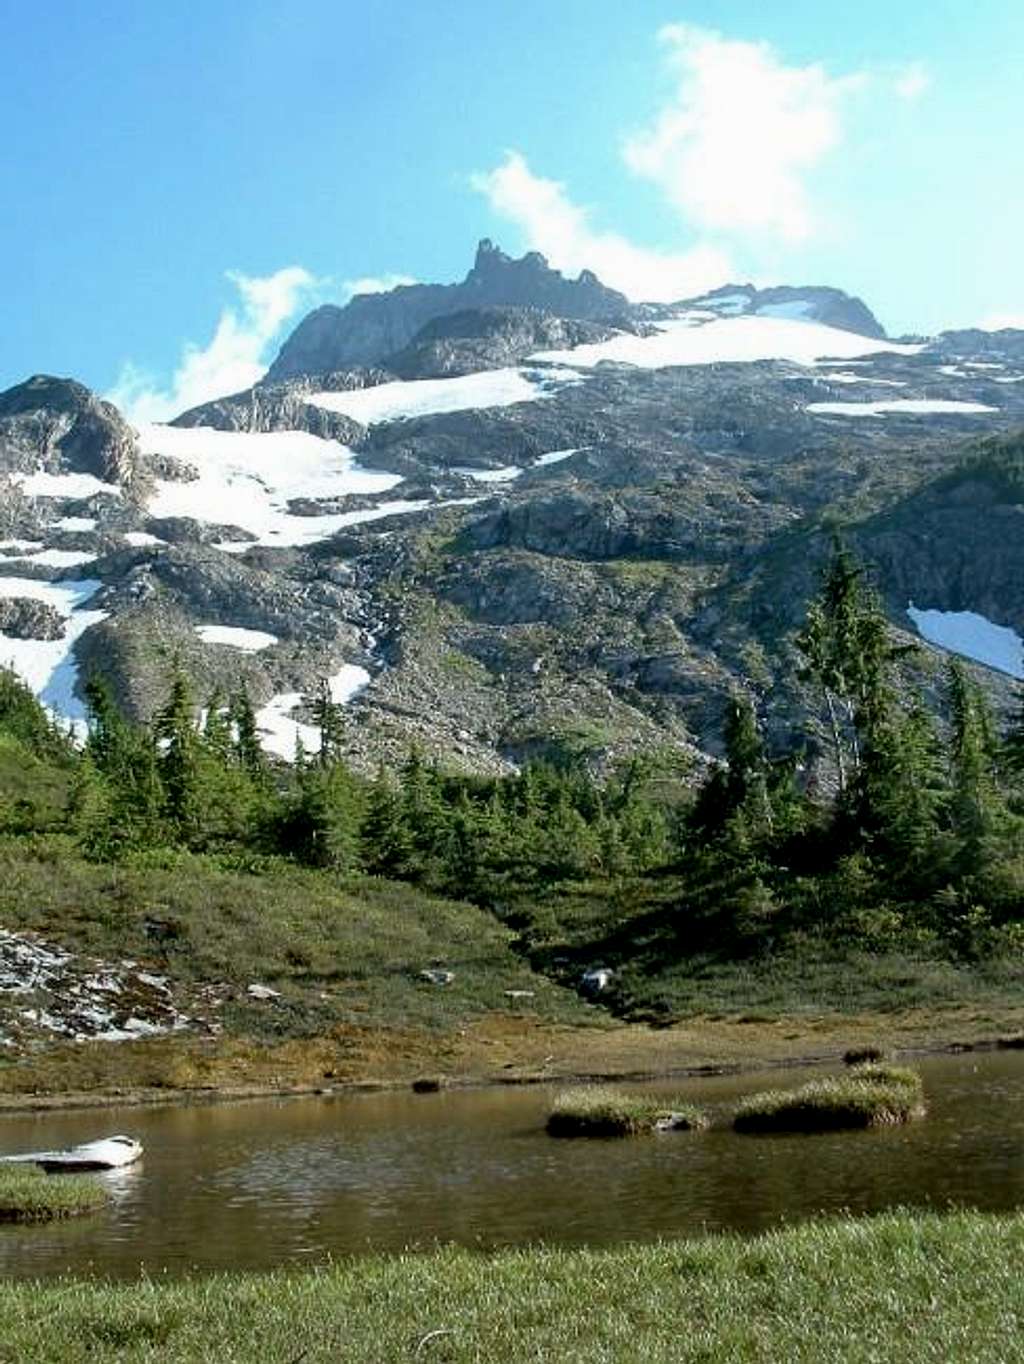 Sloan Peak from the lower basin